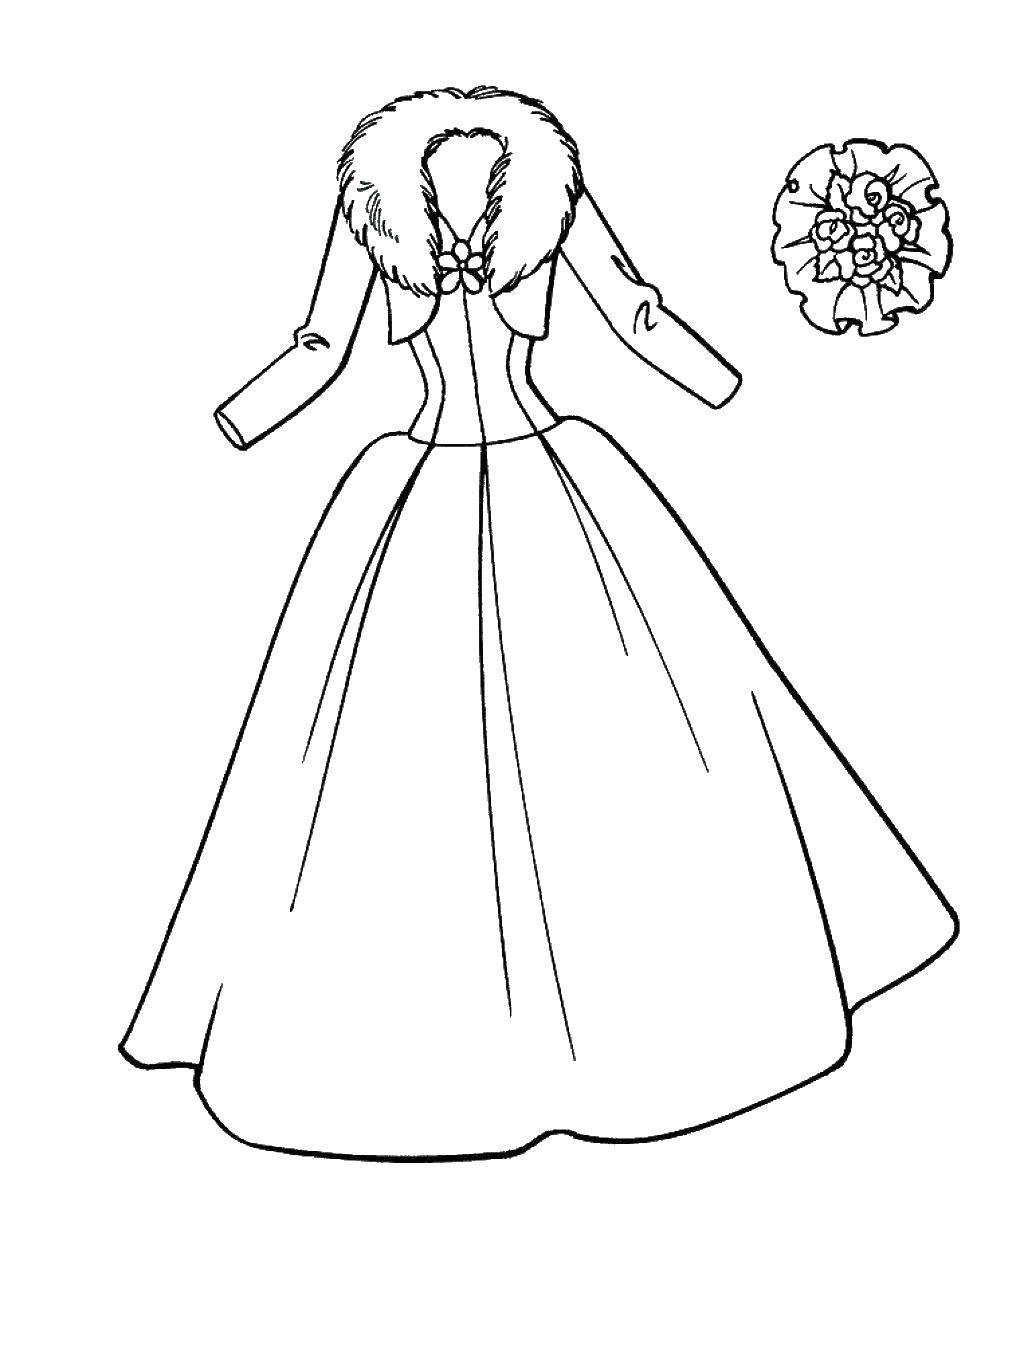 Название: Раскраска Зимний наряд невесты. Категория: Платья. Теги: Одежда, платье.